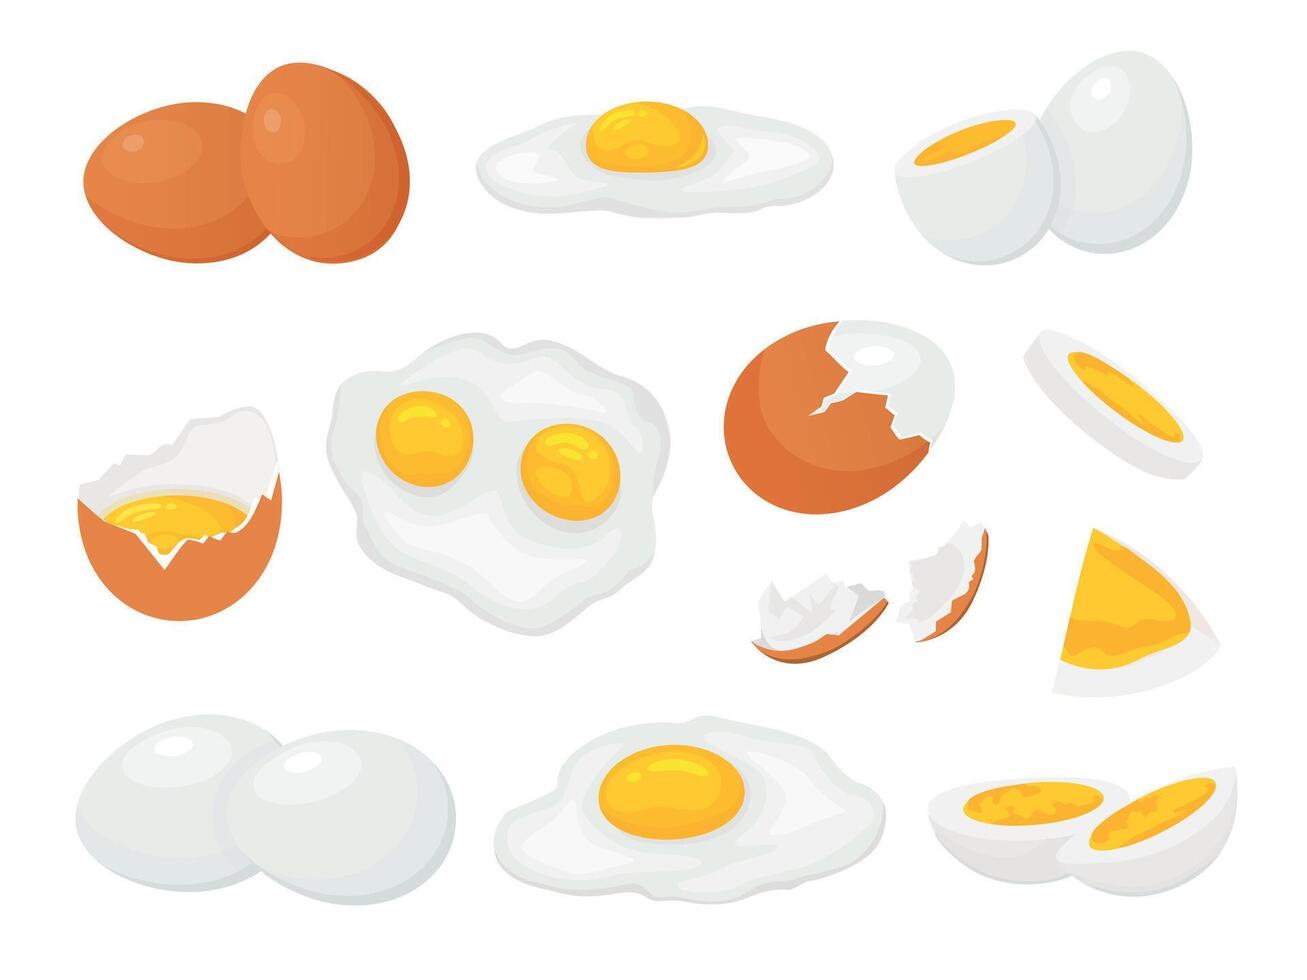 dibujos animados crudo, roto hervido y frito pollo huevos con yema de huevo. Fresco granja rebanado huevo, agrietado cáscara de huevo. cocido huevos para desayuno vector conjunto